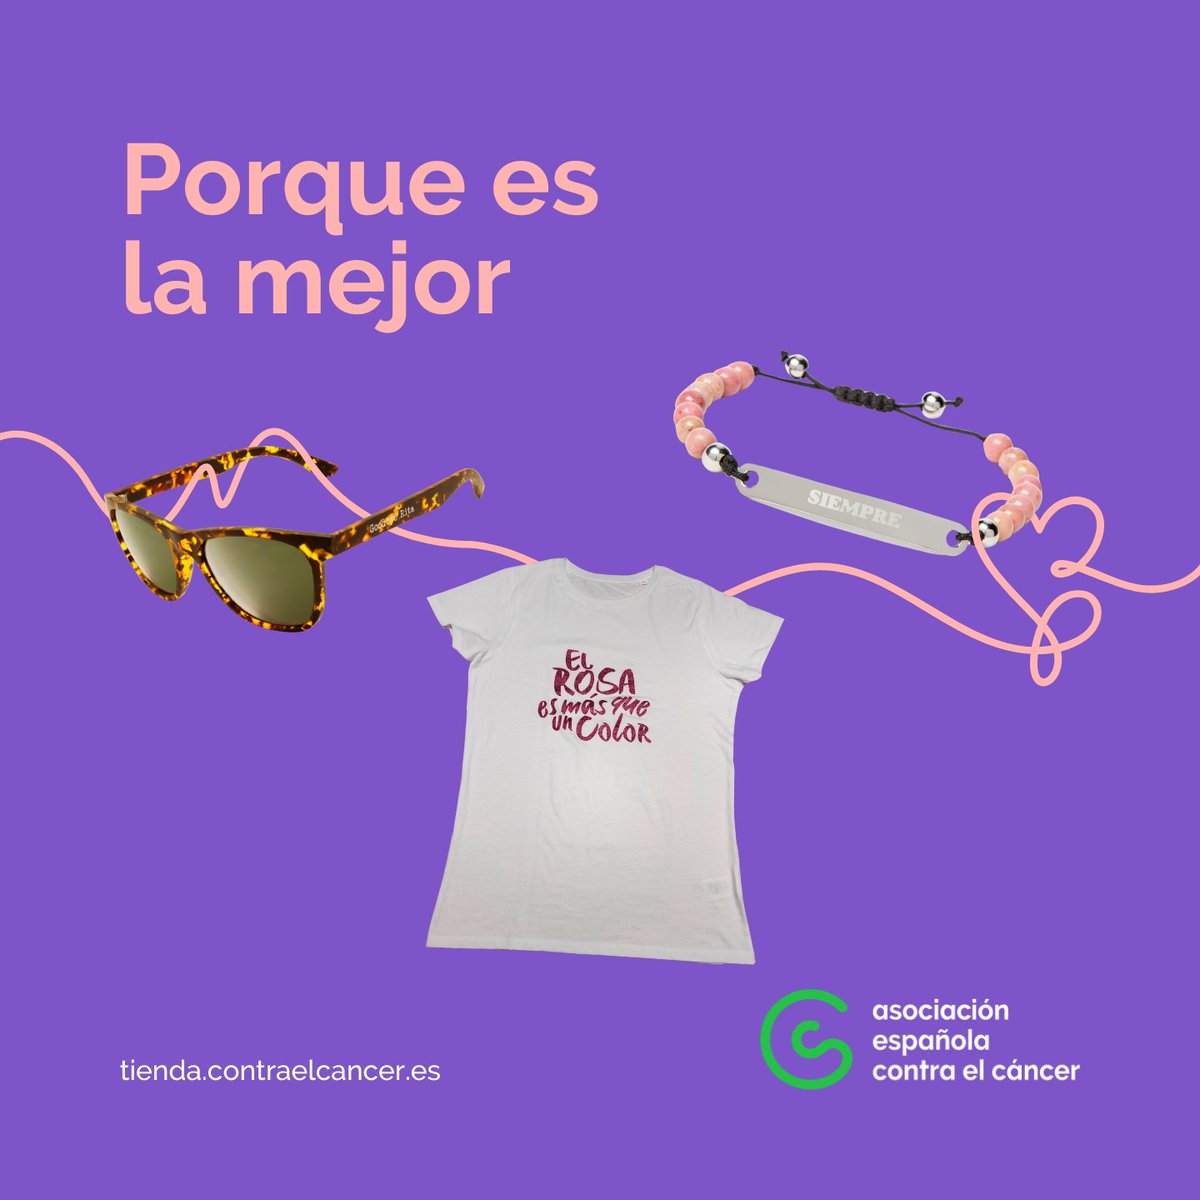 Vete pensando ya en un regalo para el día de la madre. Ella se lo merece. 👩‍👦👩‍👧💚 tienda.contraelcancer.es #ContraElCáncerAsturias #Asturias #DiaDeLaMadre